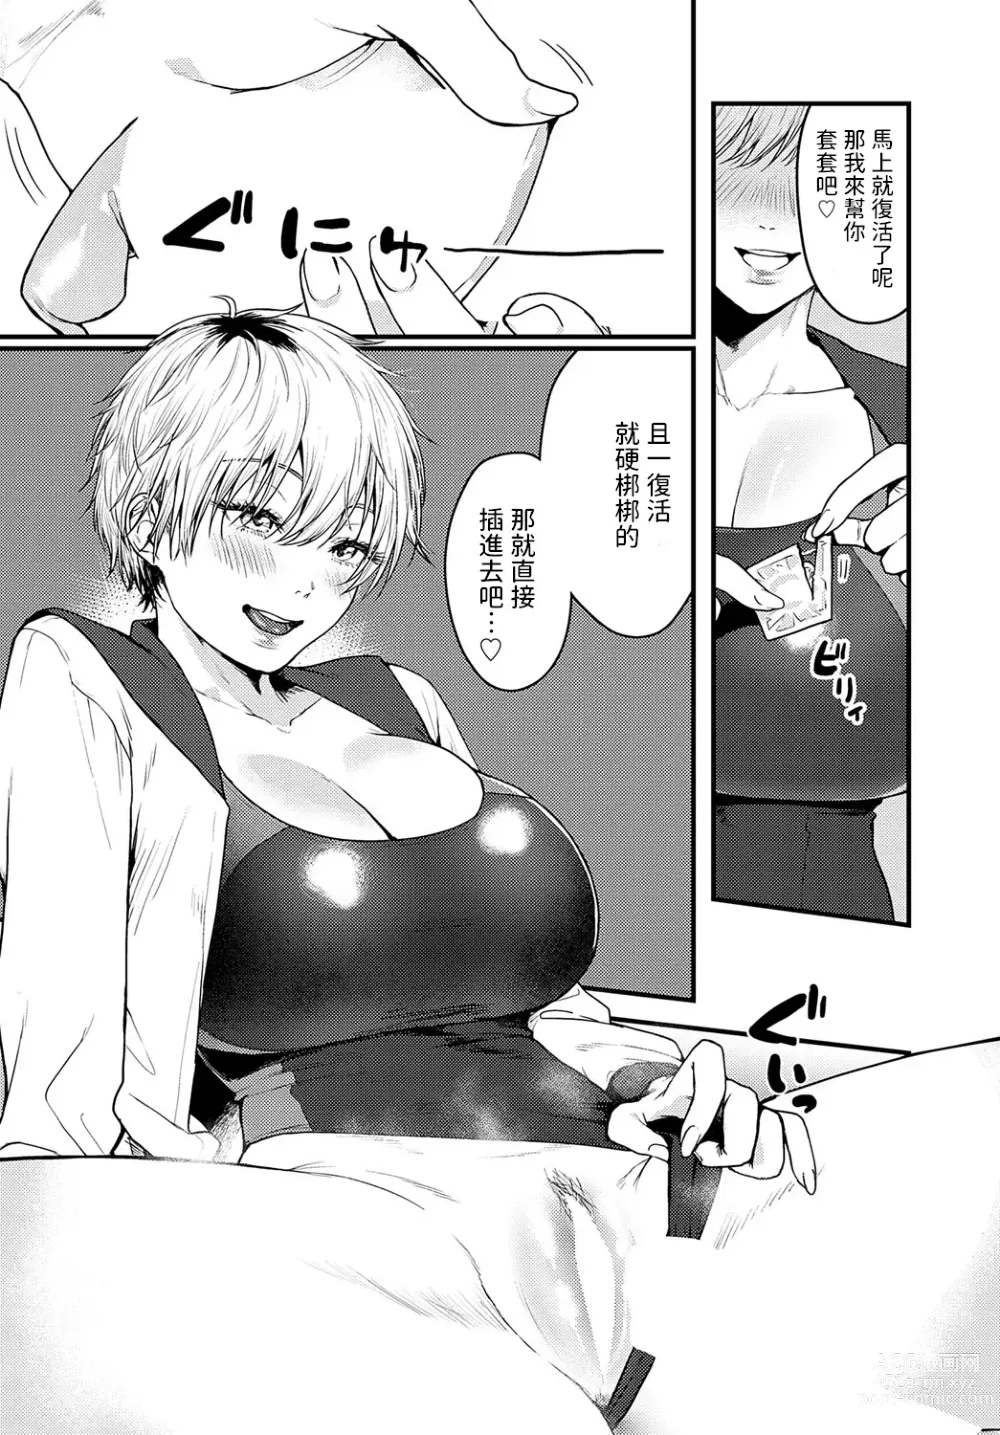 Page 10 of manga Misshitsu Swimsuit